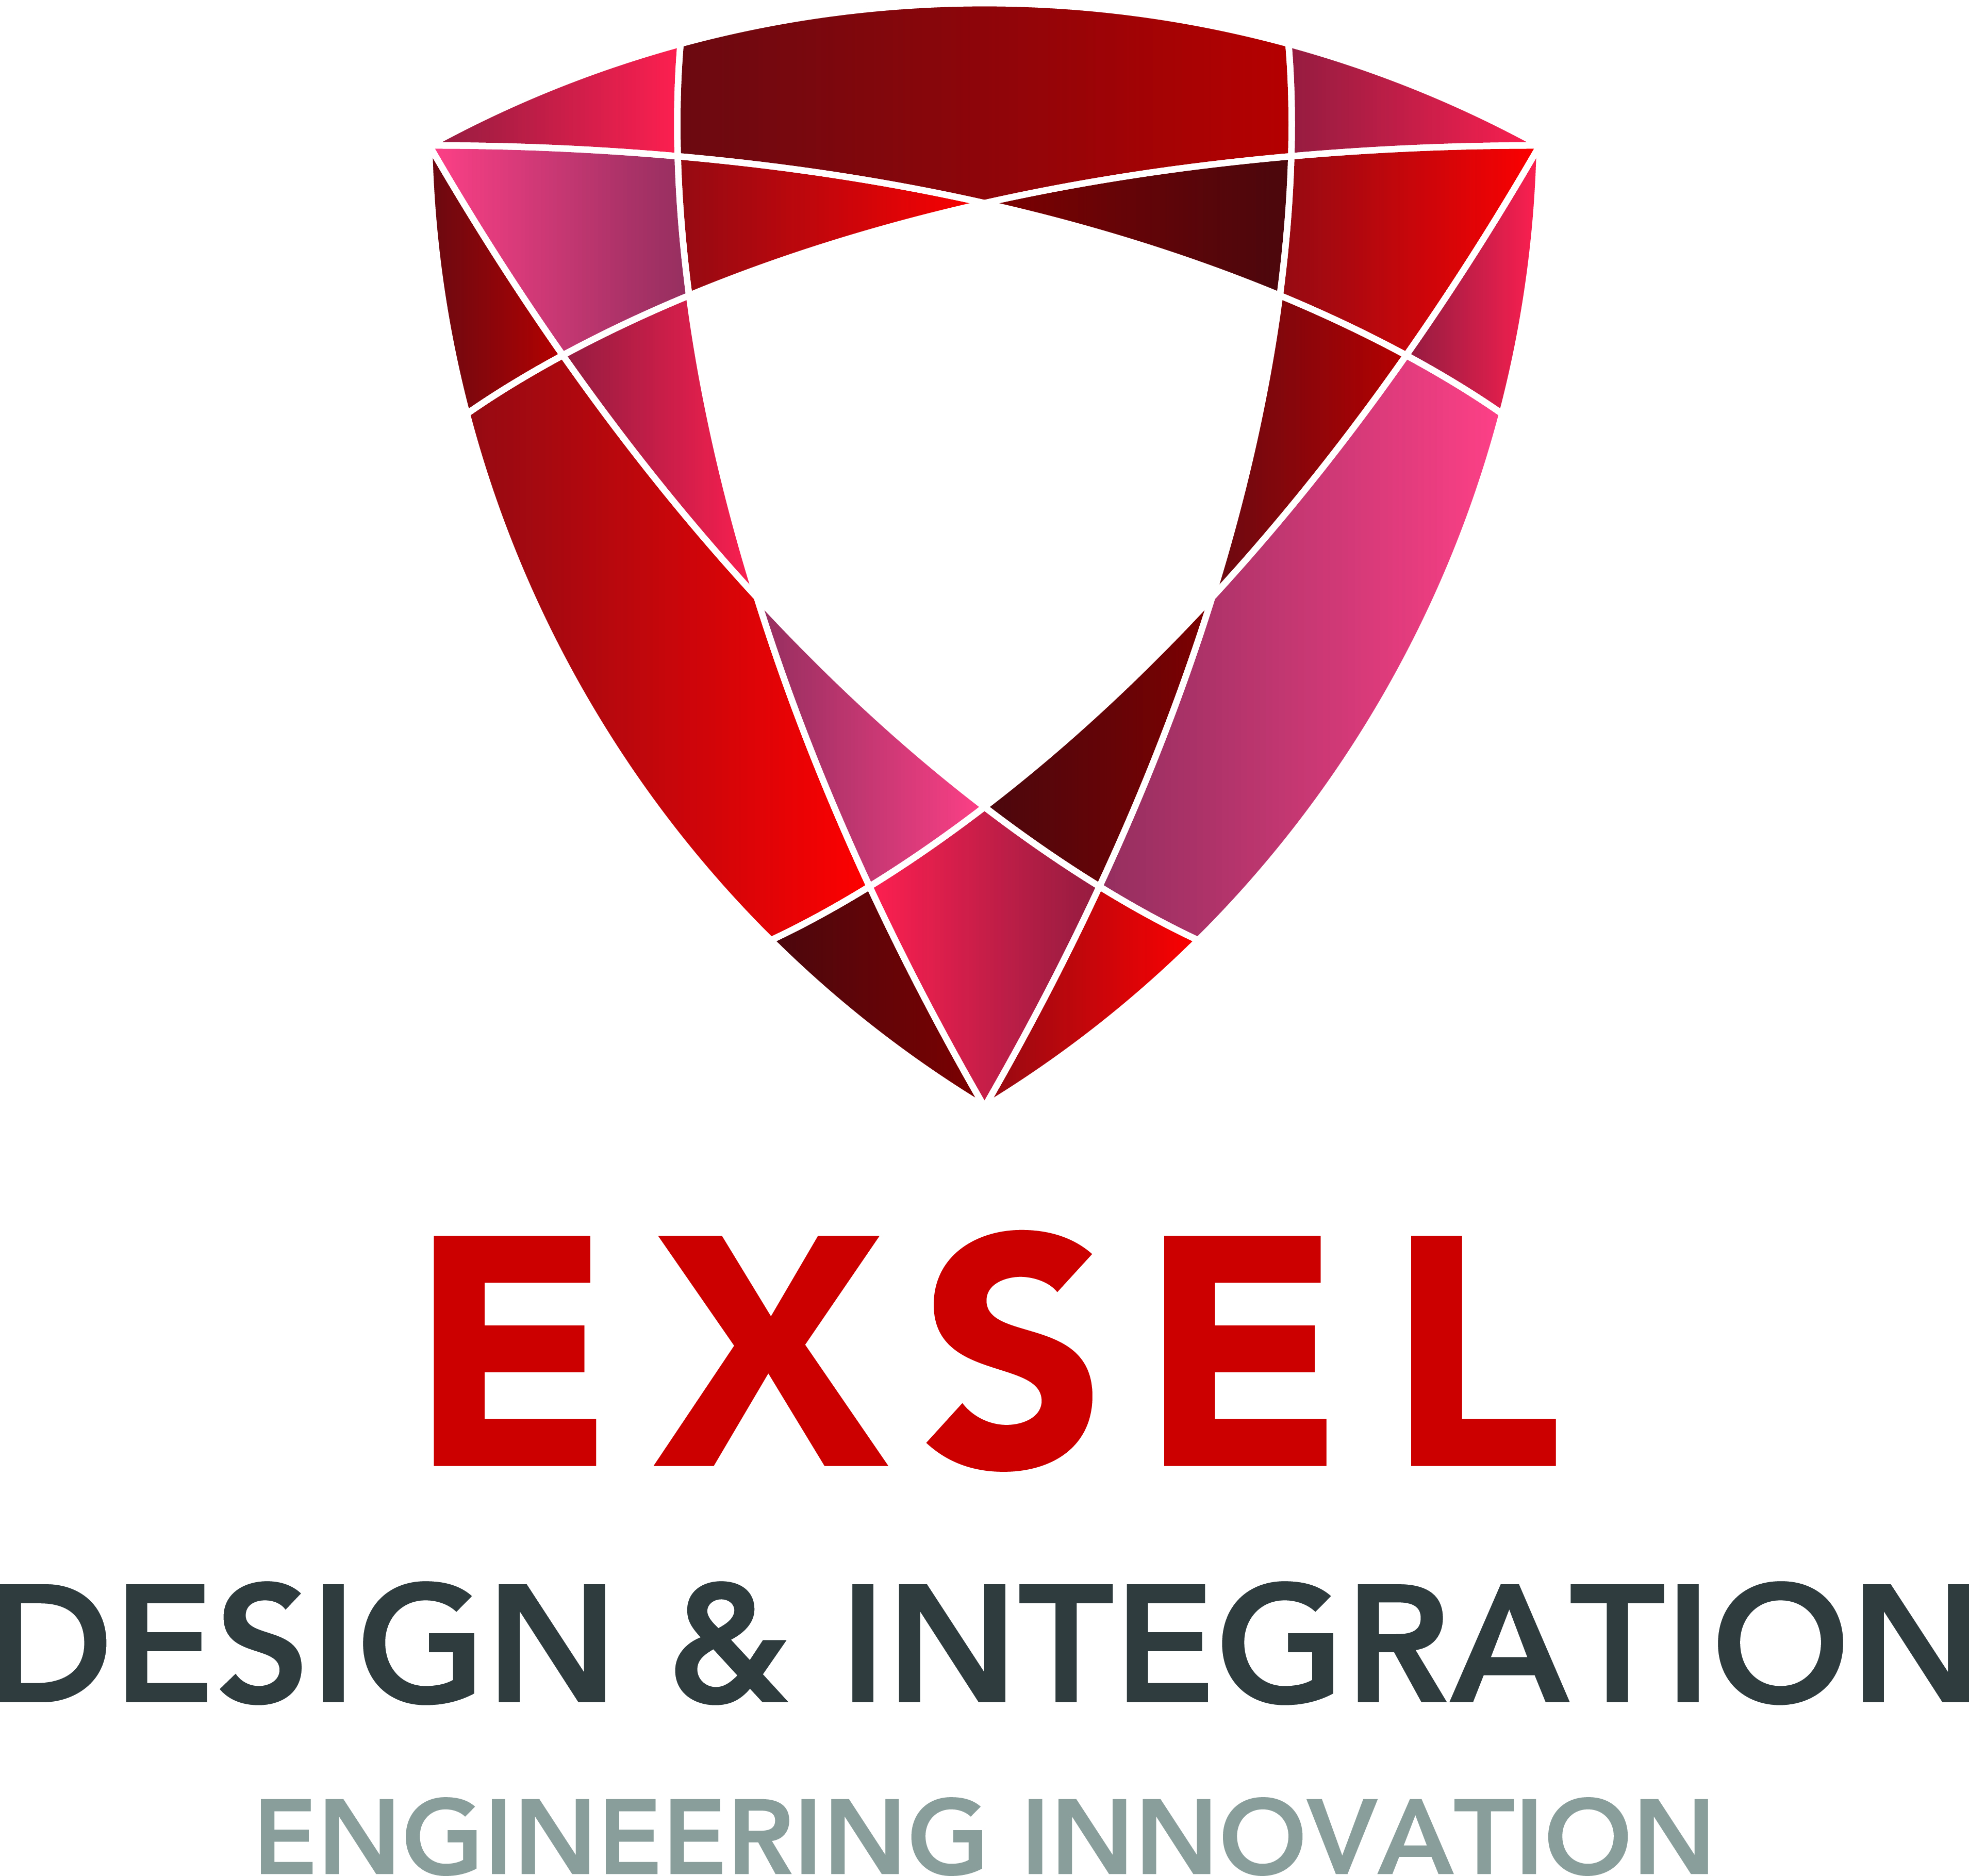 Exsel Design and Integration Ltd